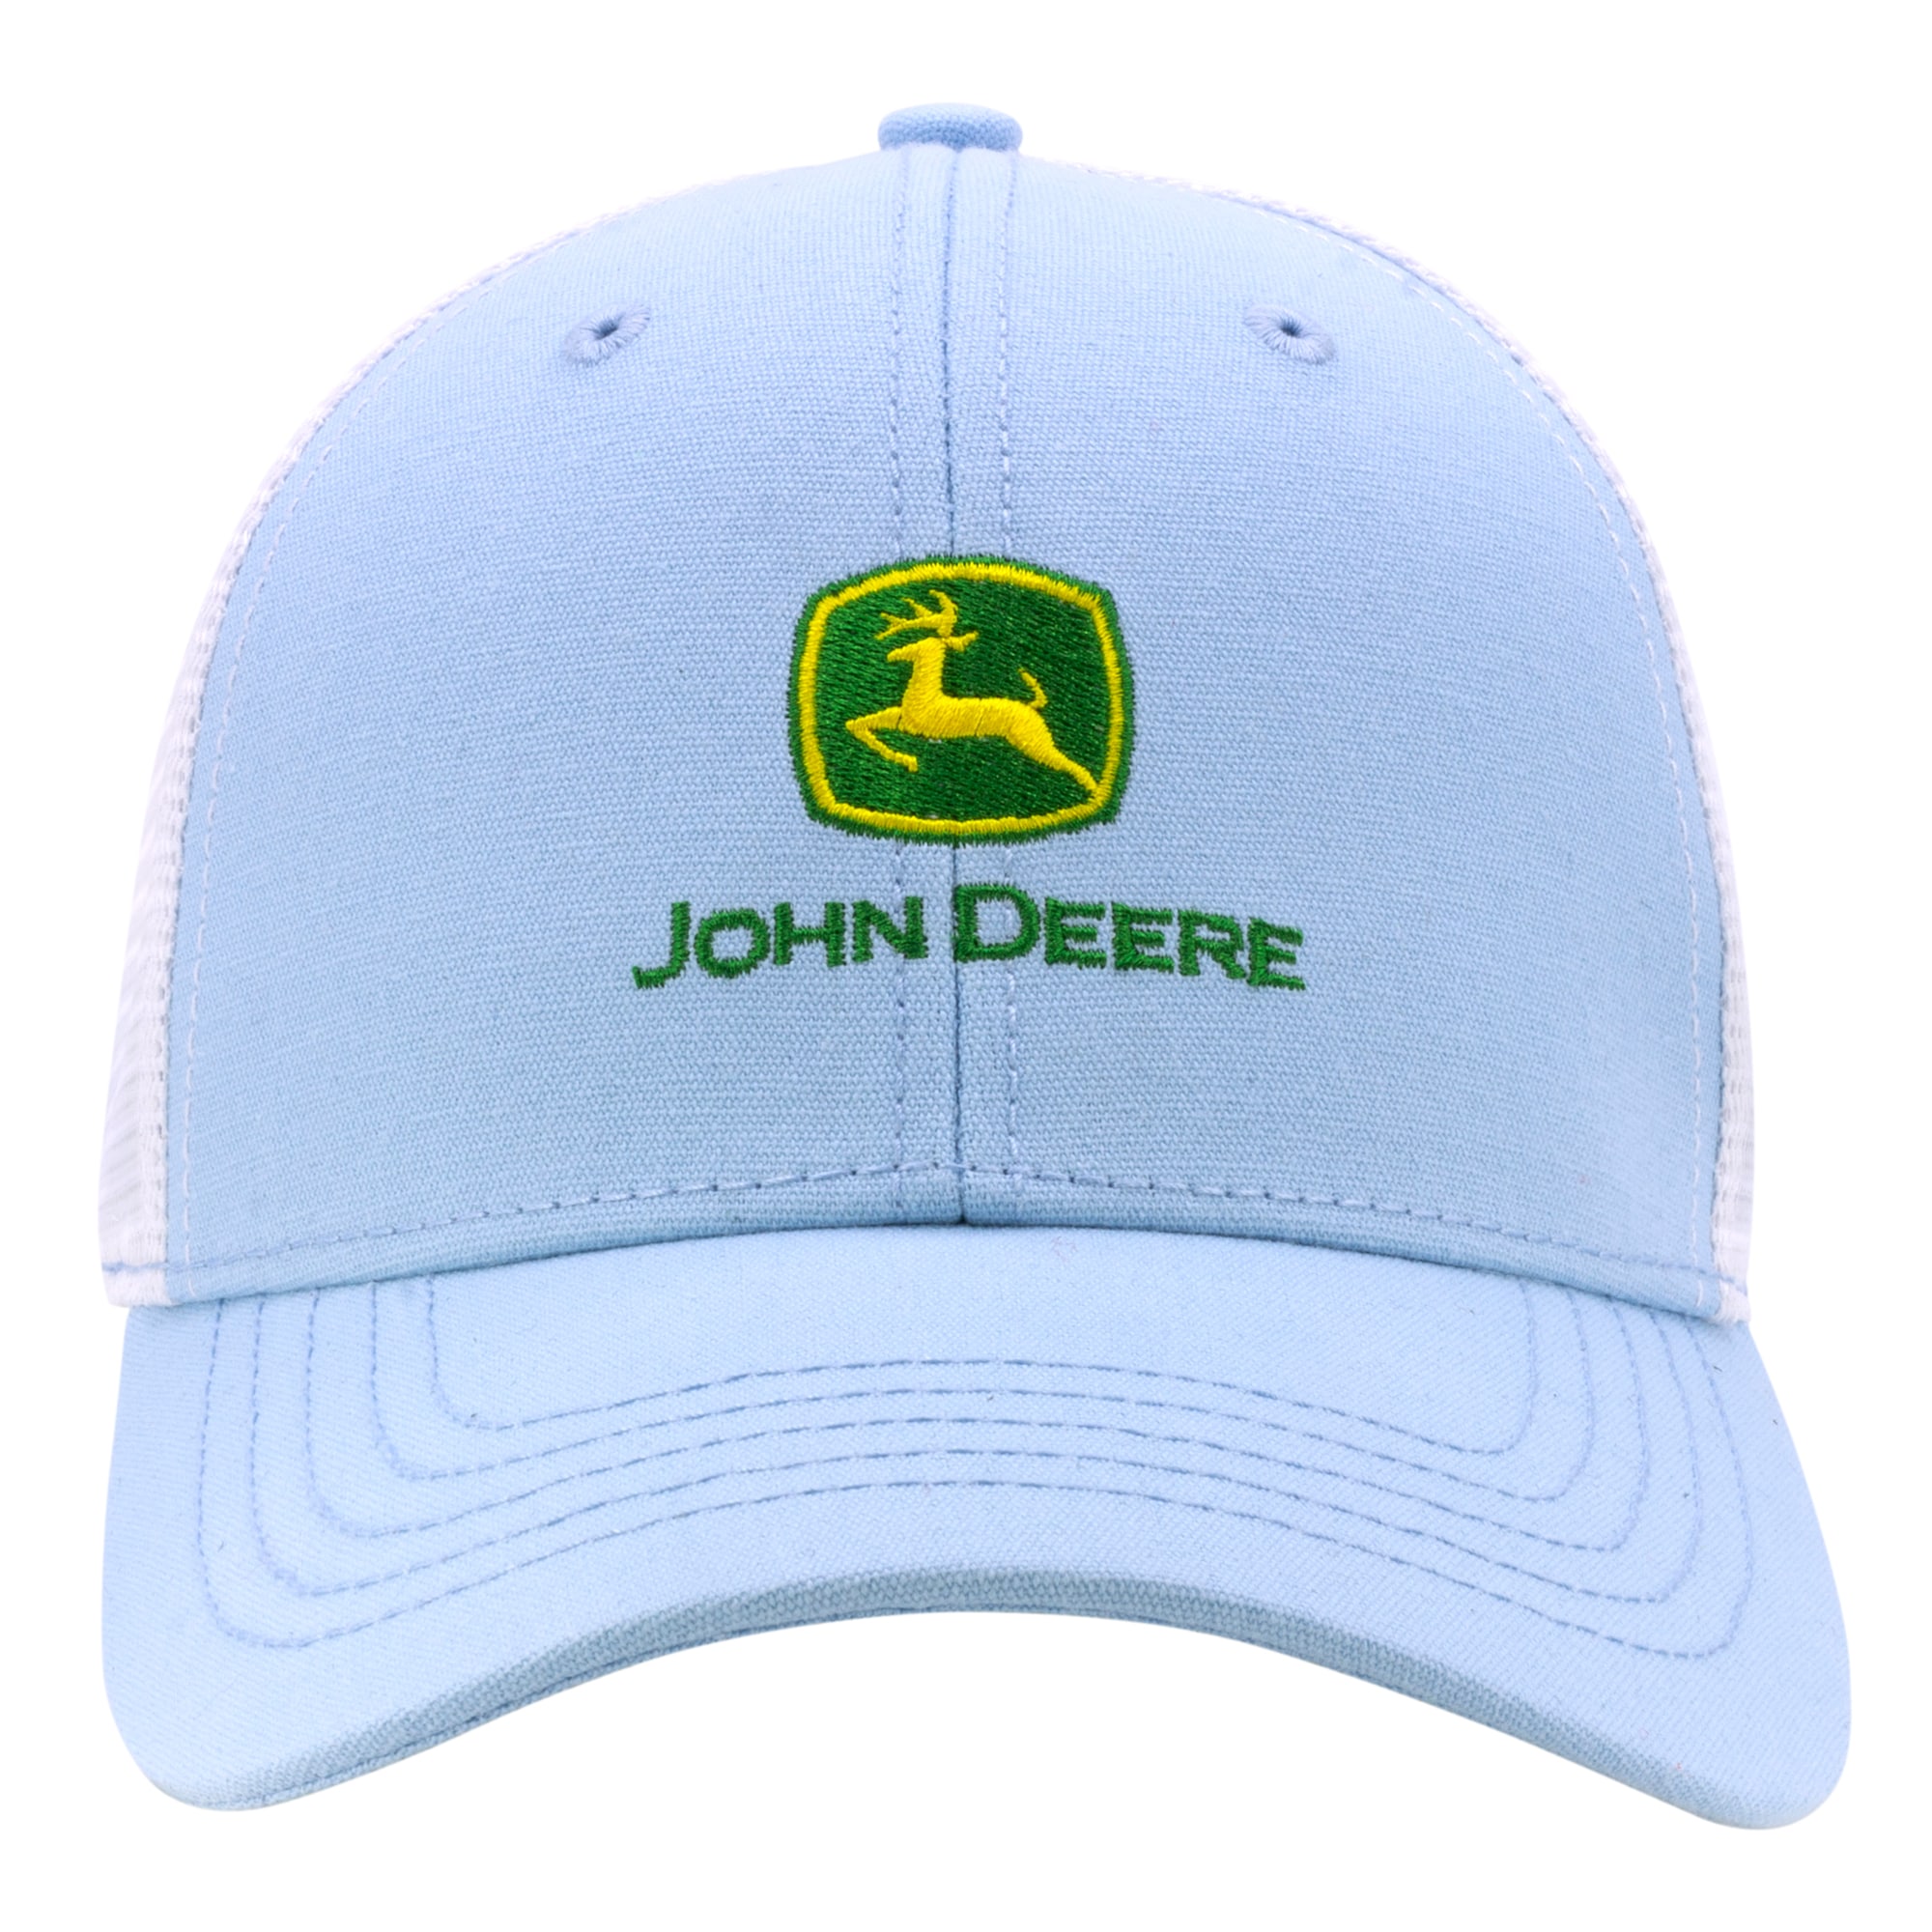 John Deere Women's Light Blue Cotton Baseball Cap at